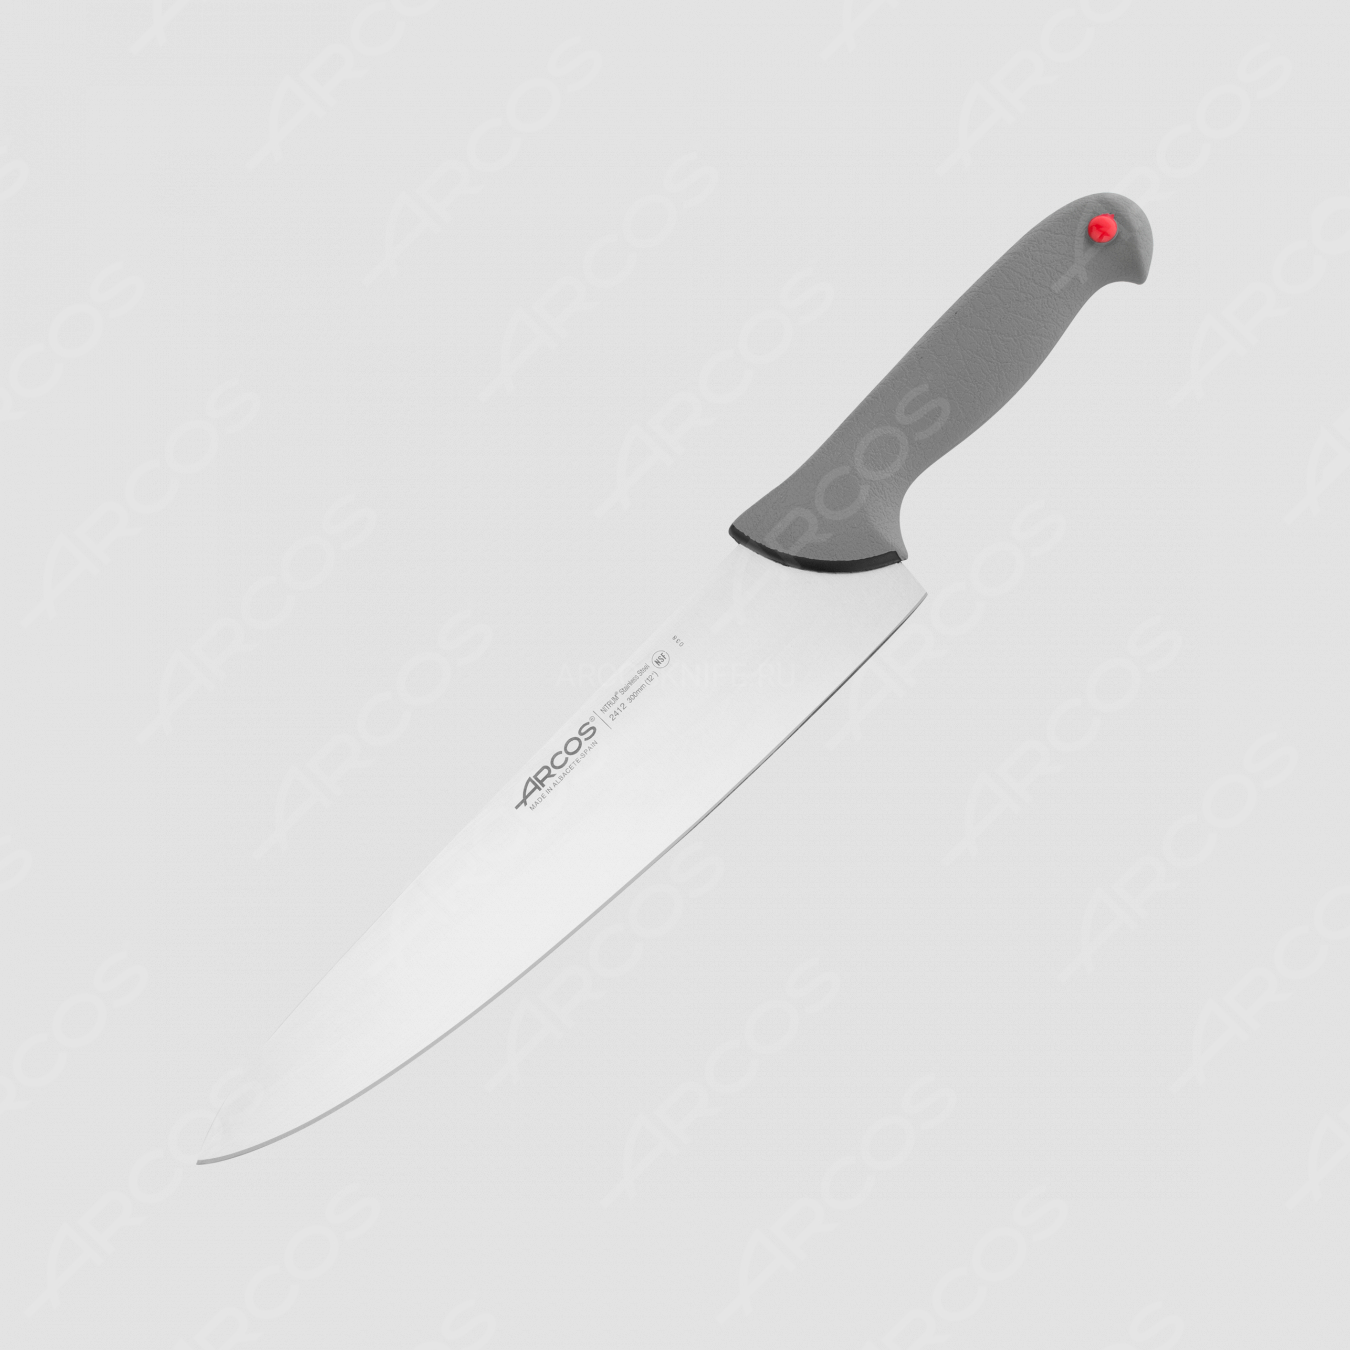 Профессиональный поварской кухонный нож 30 см, серия Colour-prof, ARCOS, Испания